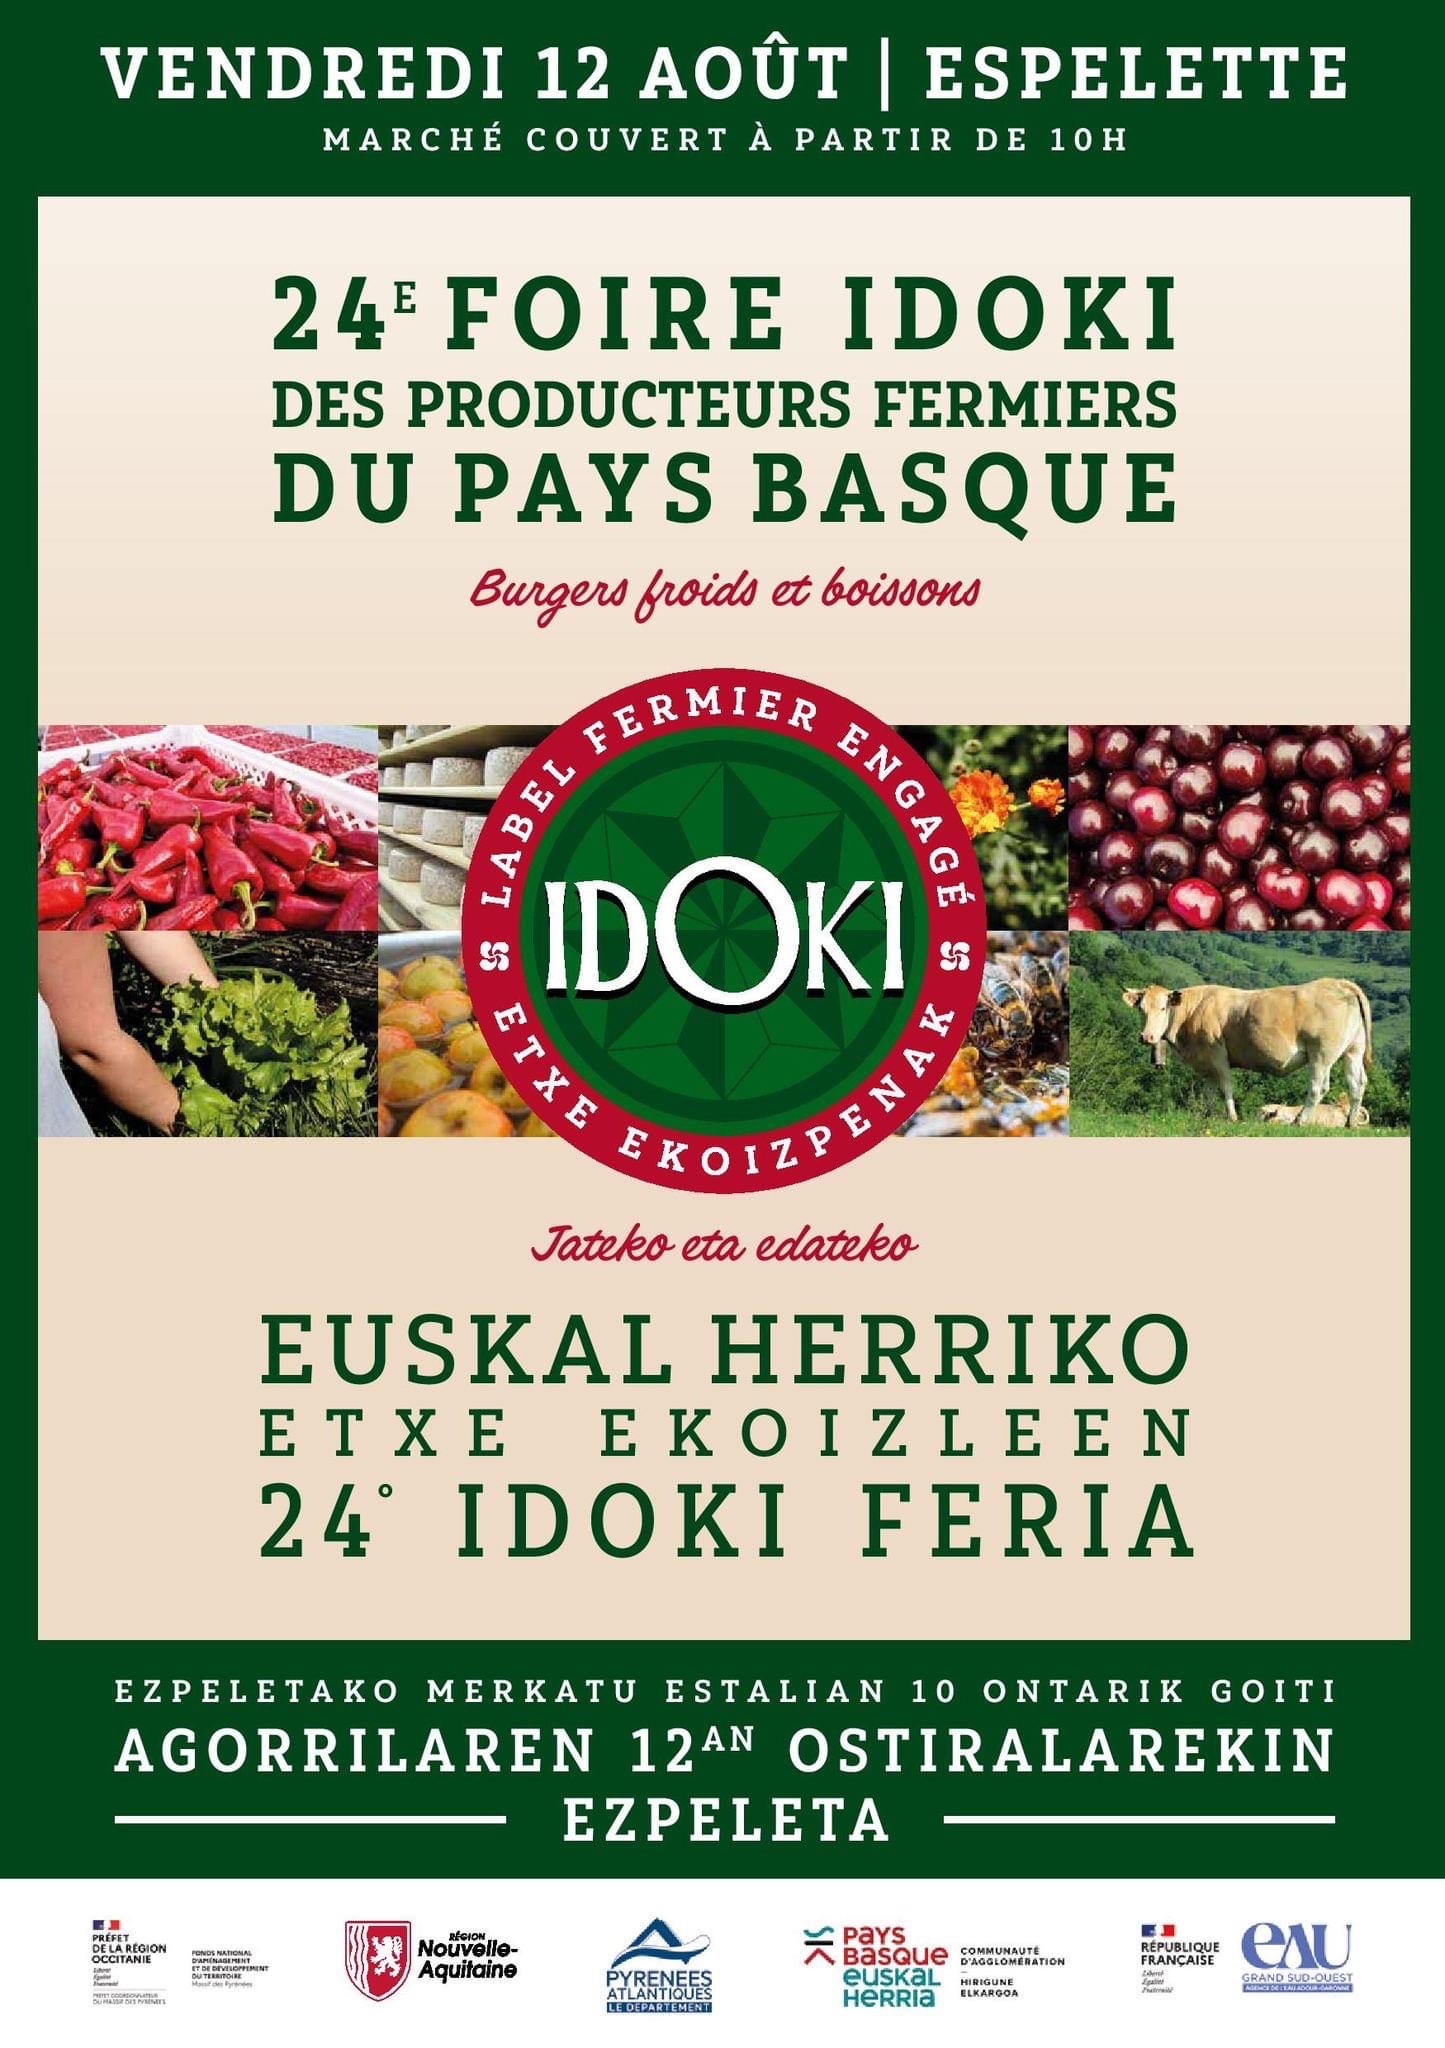 Foire IDOKI des producteurs fermiers du pays basque Espelette